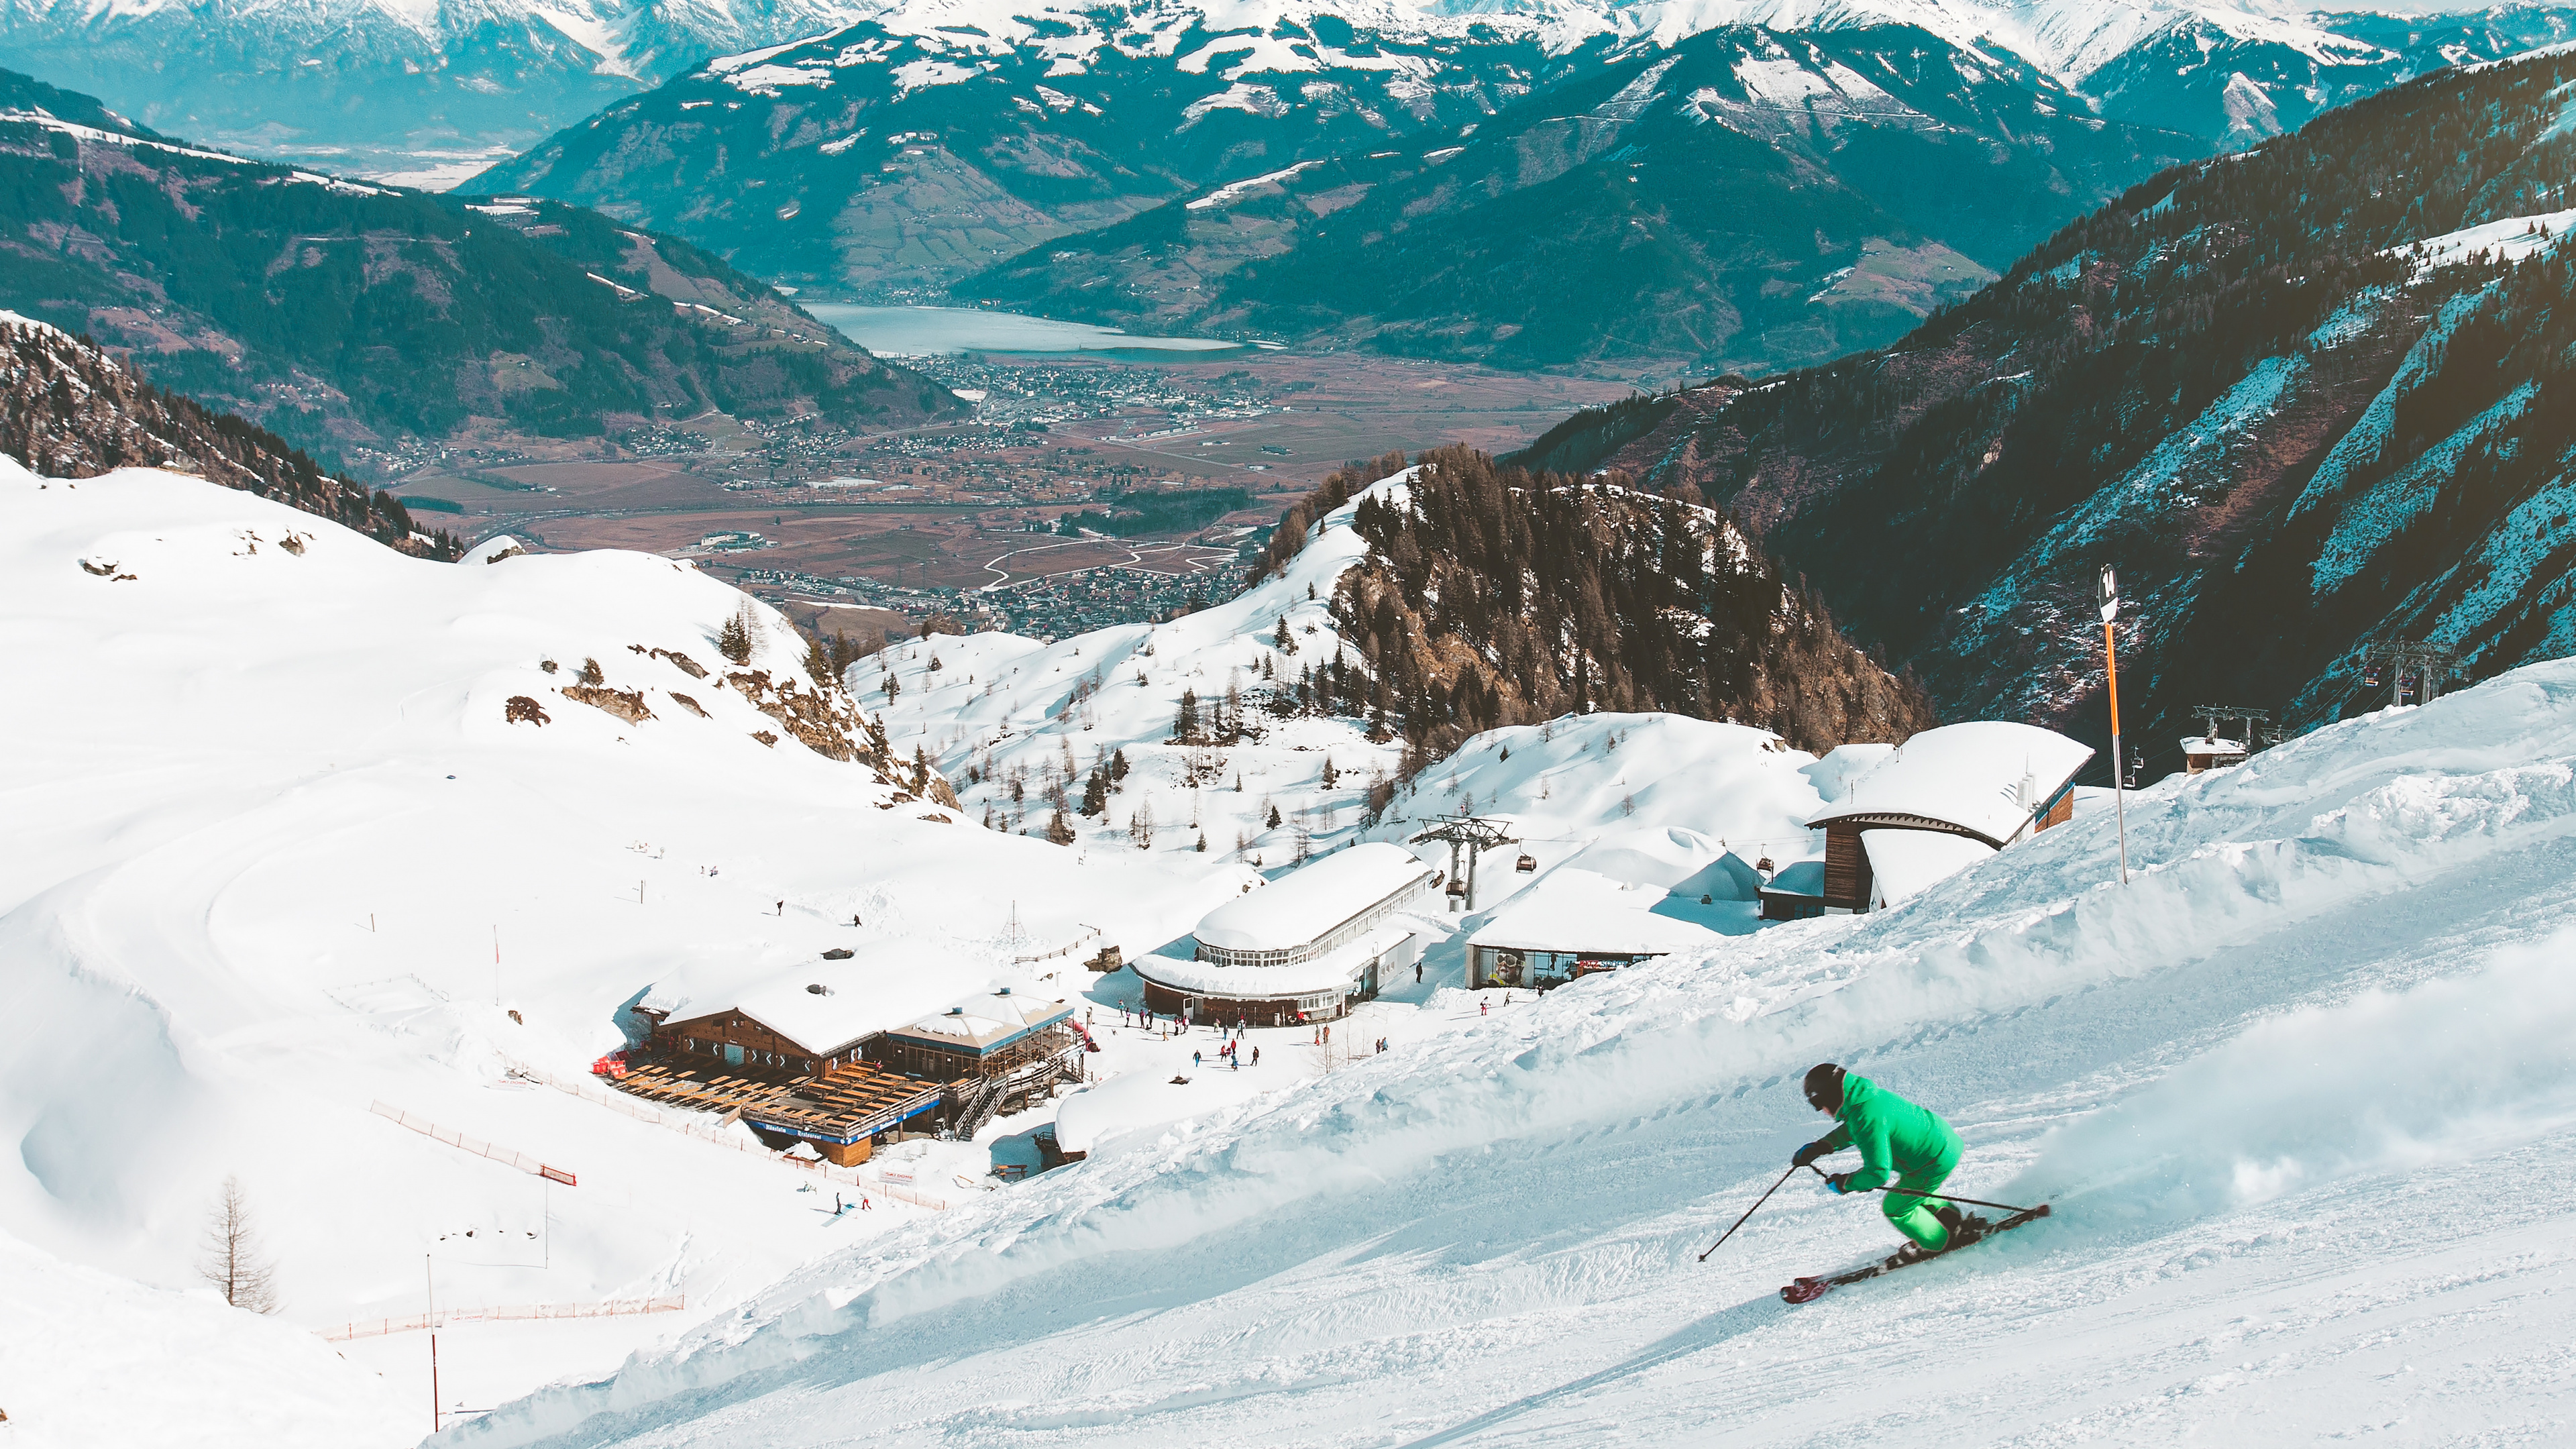 Skigebiet, Skifahren, Resort, Schnee, Bergigen Landschaftsformen. Wallpaper in 3840x2160 Resolution